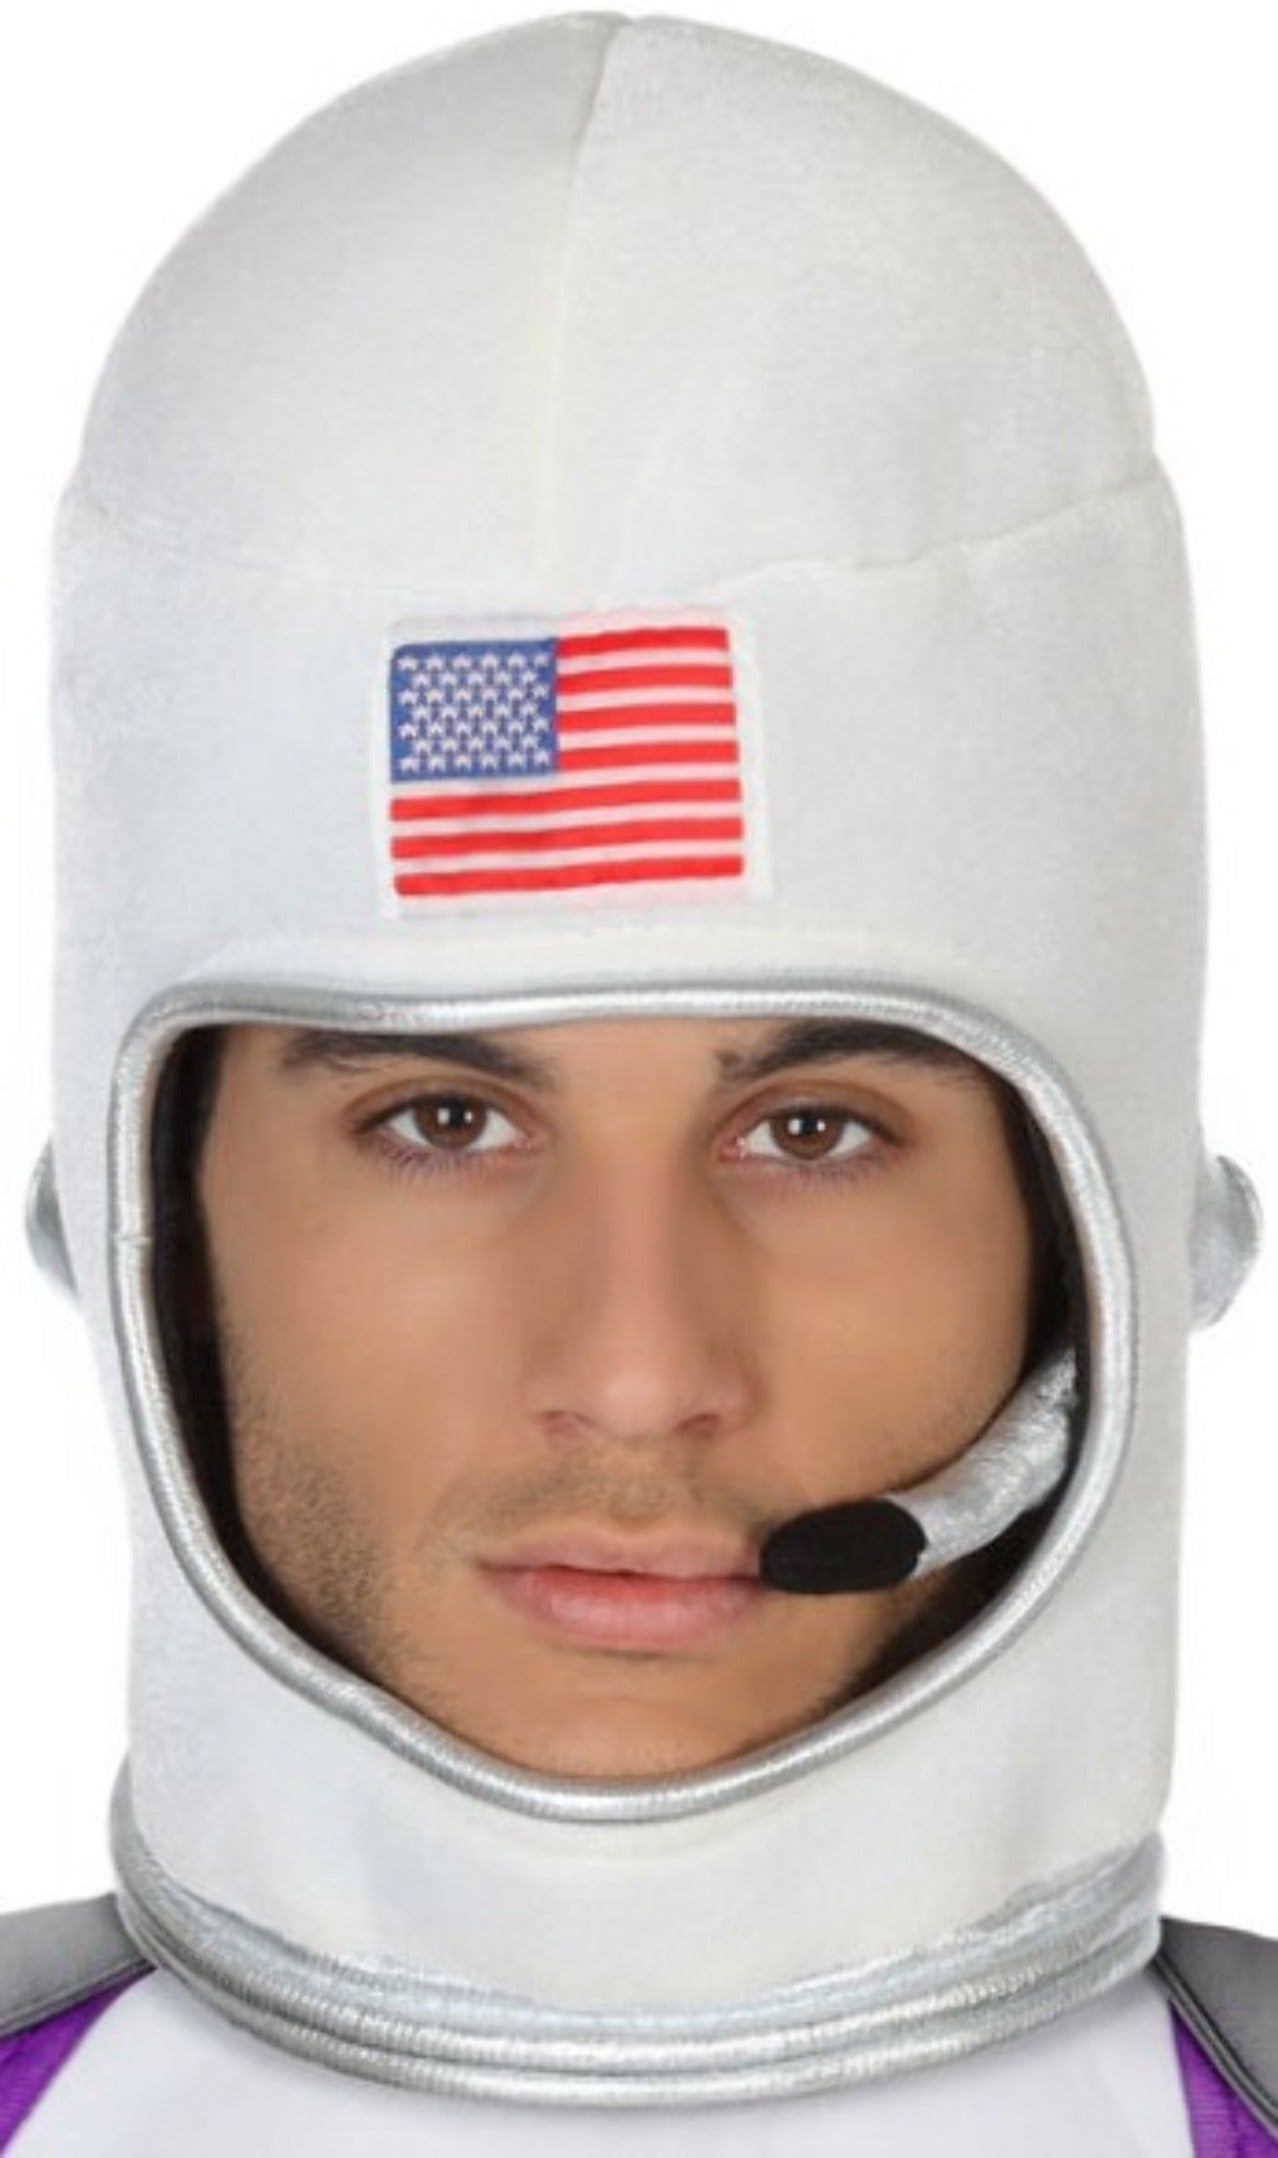 Casco da astronauta adulto bianco con visiera fissa